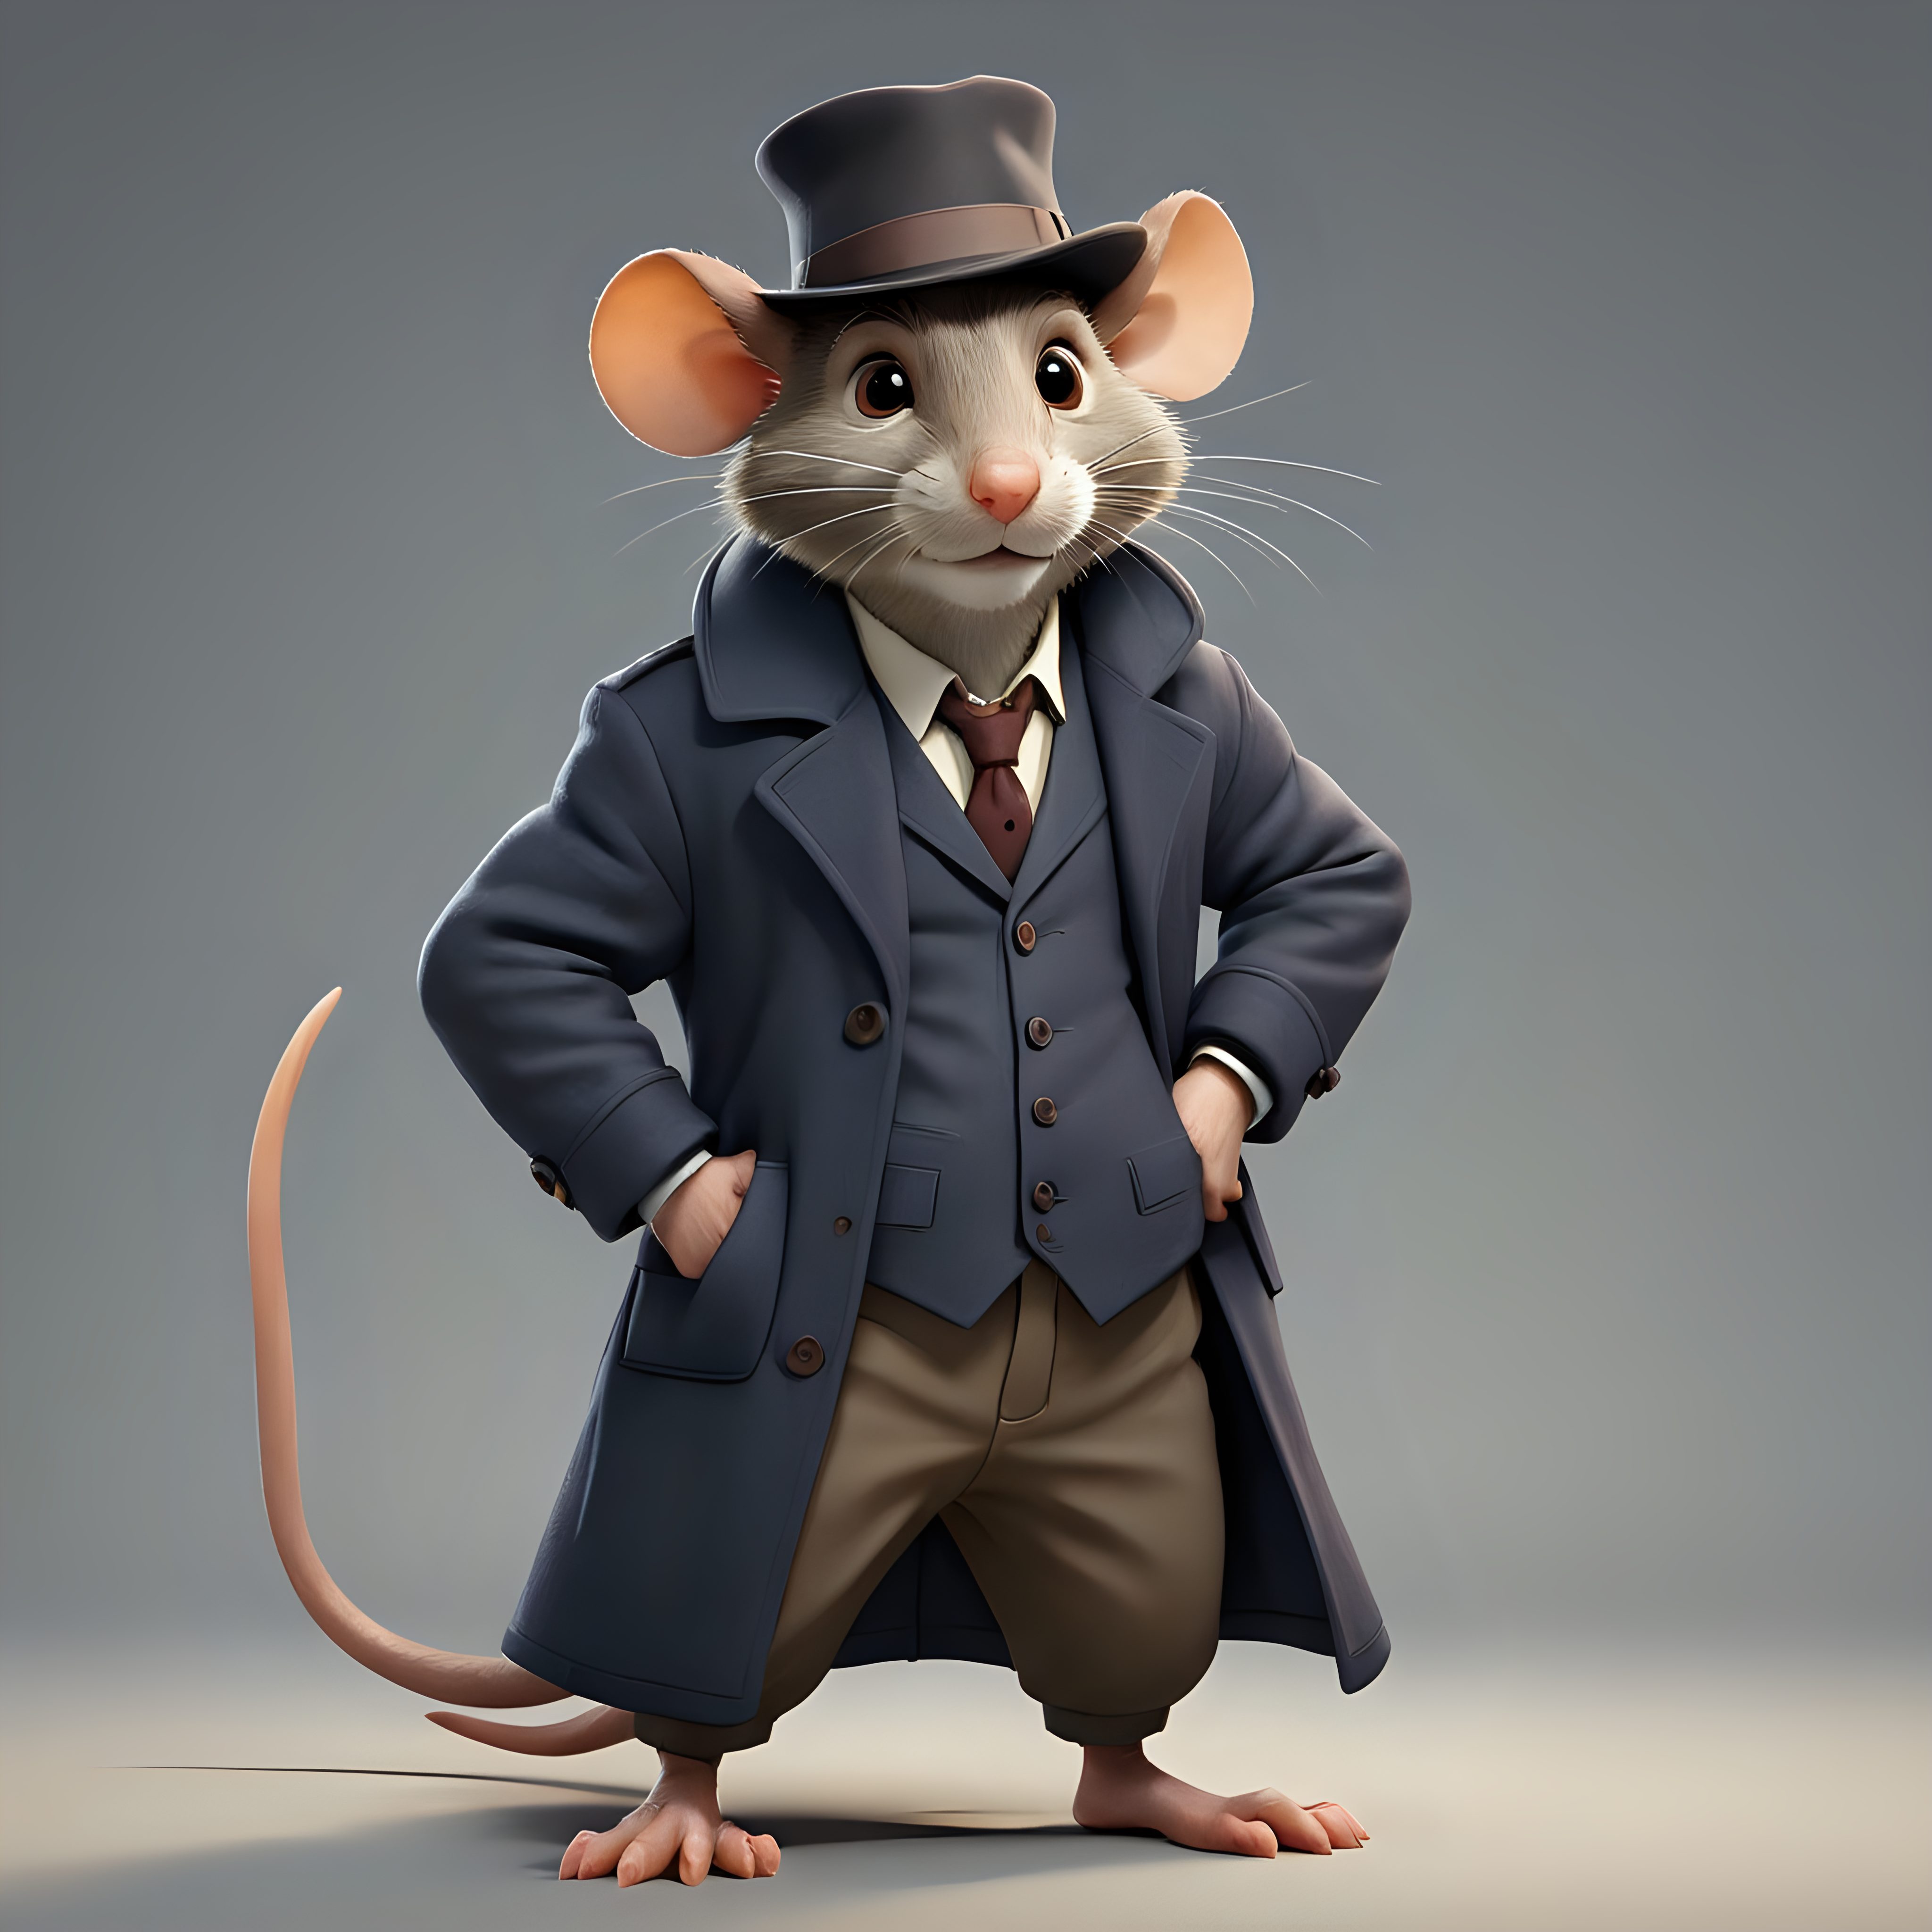 Cartoon Detective Rat Wearing Overcoat and Formal Hat